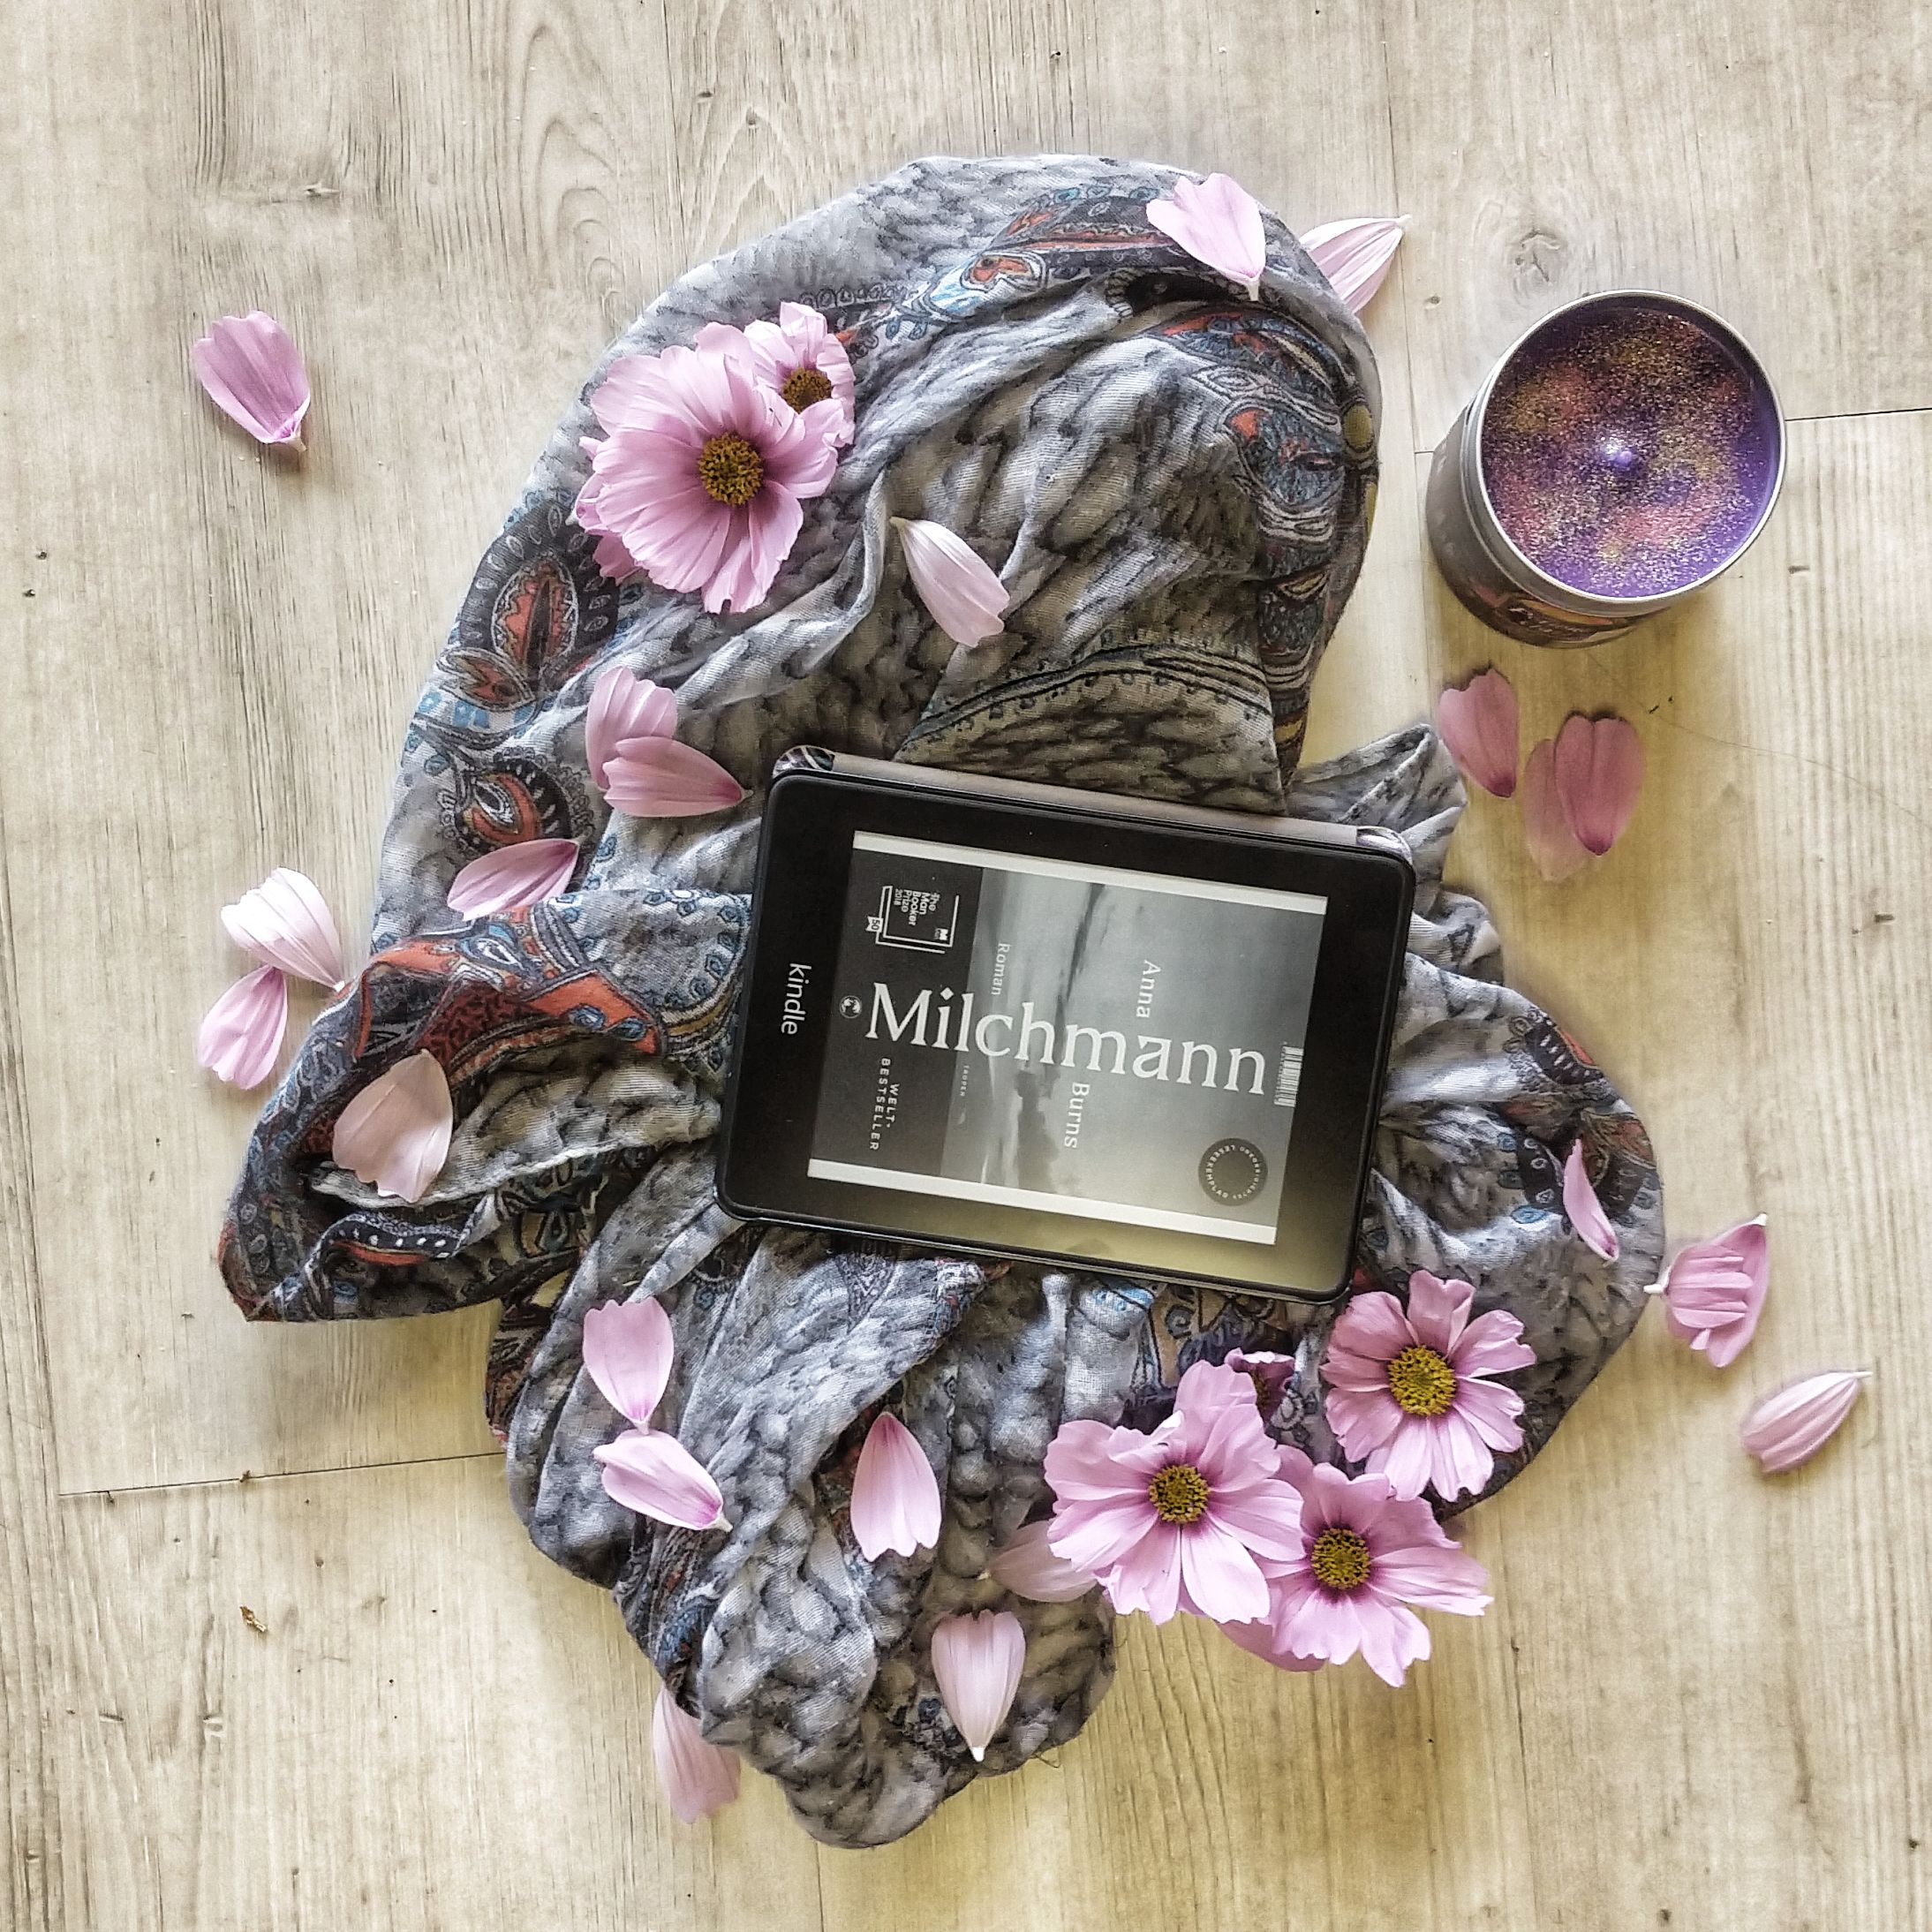 Der Kindle zeigt das Cover von Milchmann in schwarz-weiß. Das Gerät liegt auf einem Schal auf einem hellem Holzboden, darum rosa Blüten und eine lila Kerze